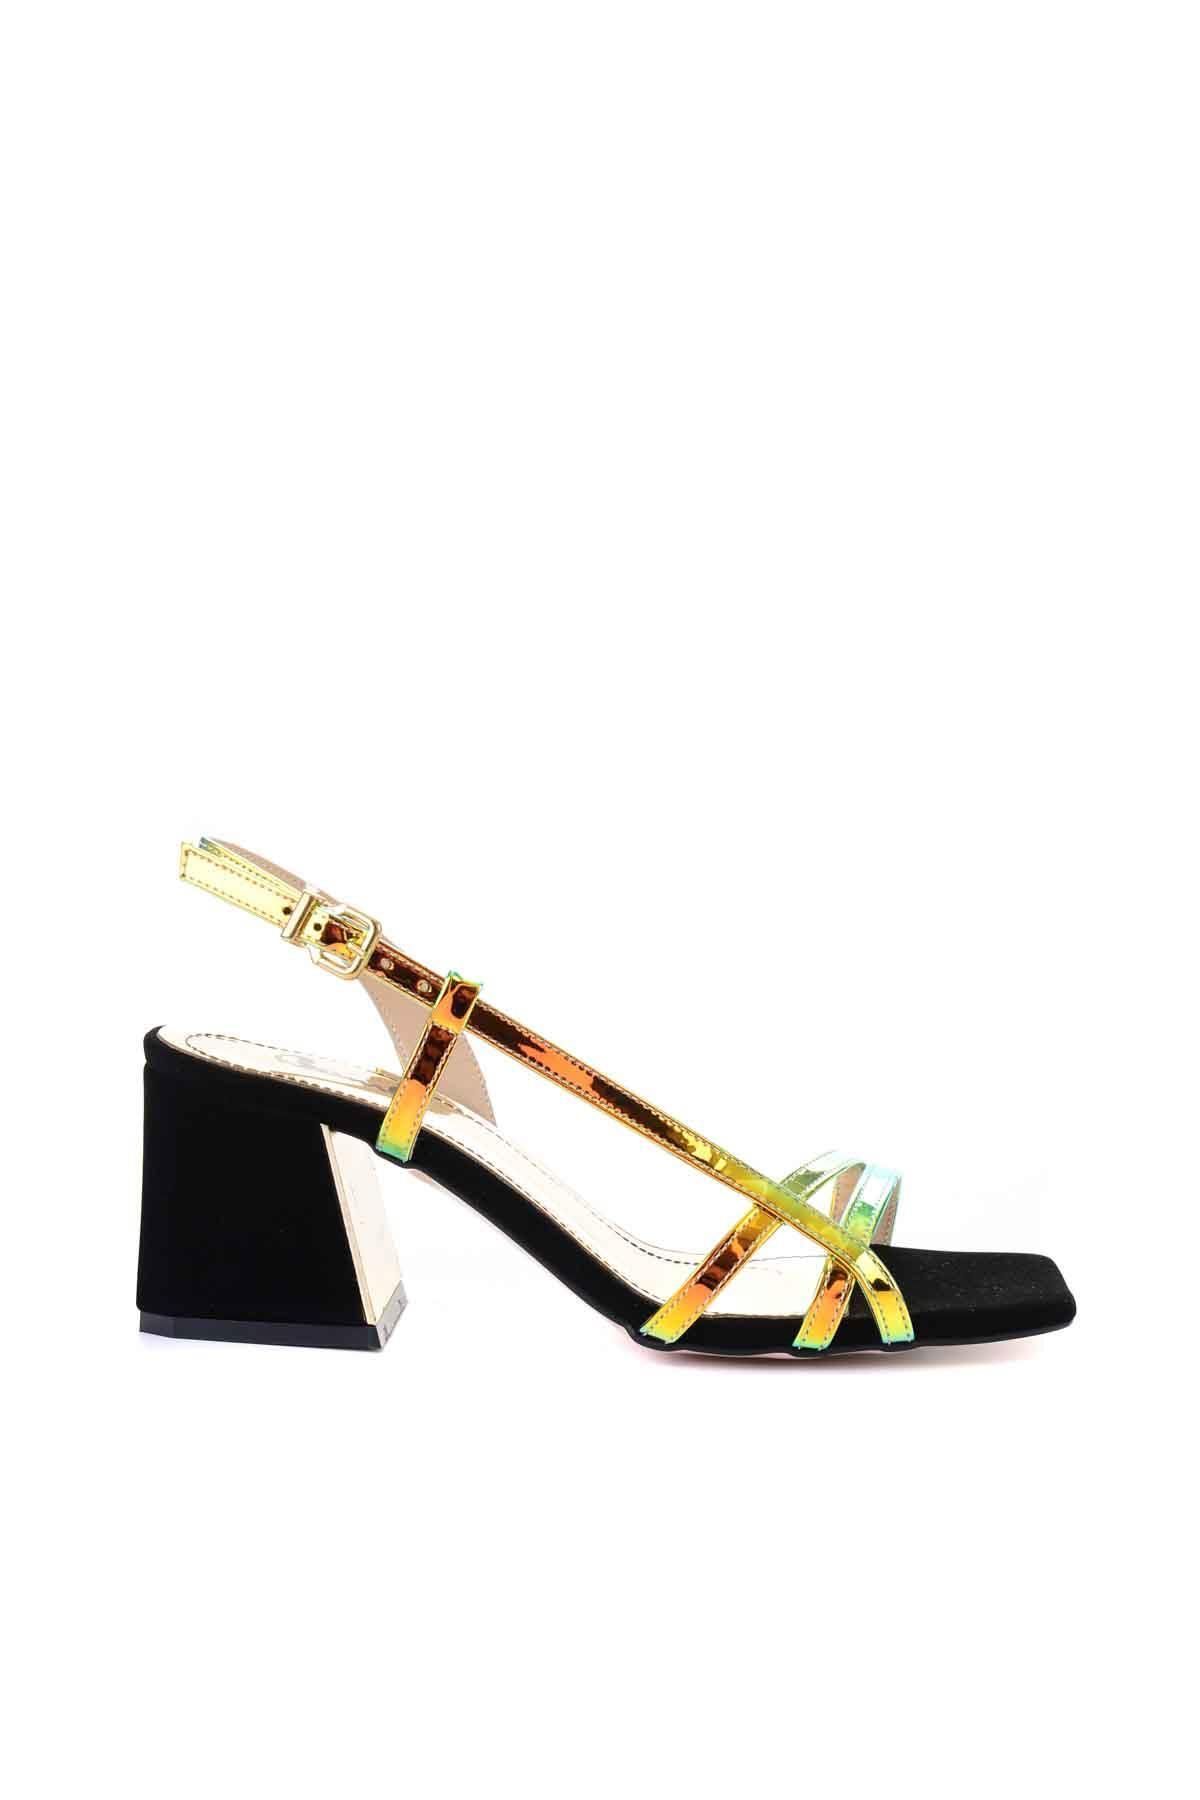 Bambi Altın Kadın Klasik Topuklu Ayakkabı L0501818655